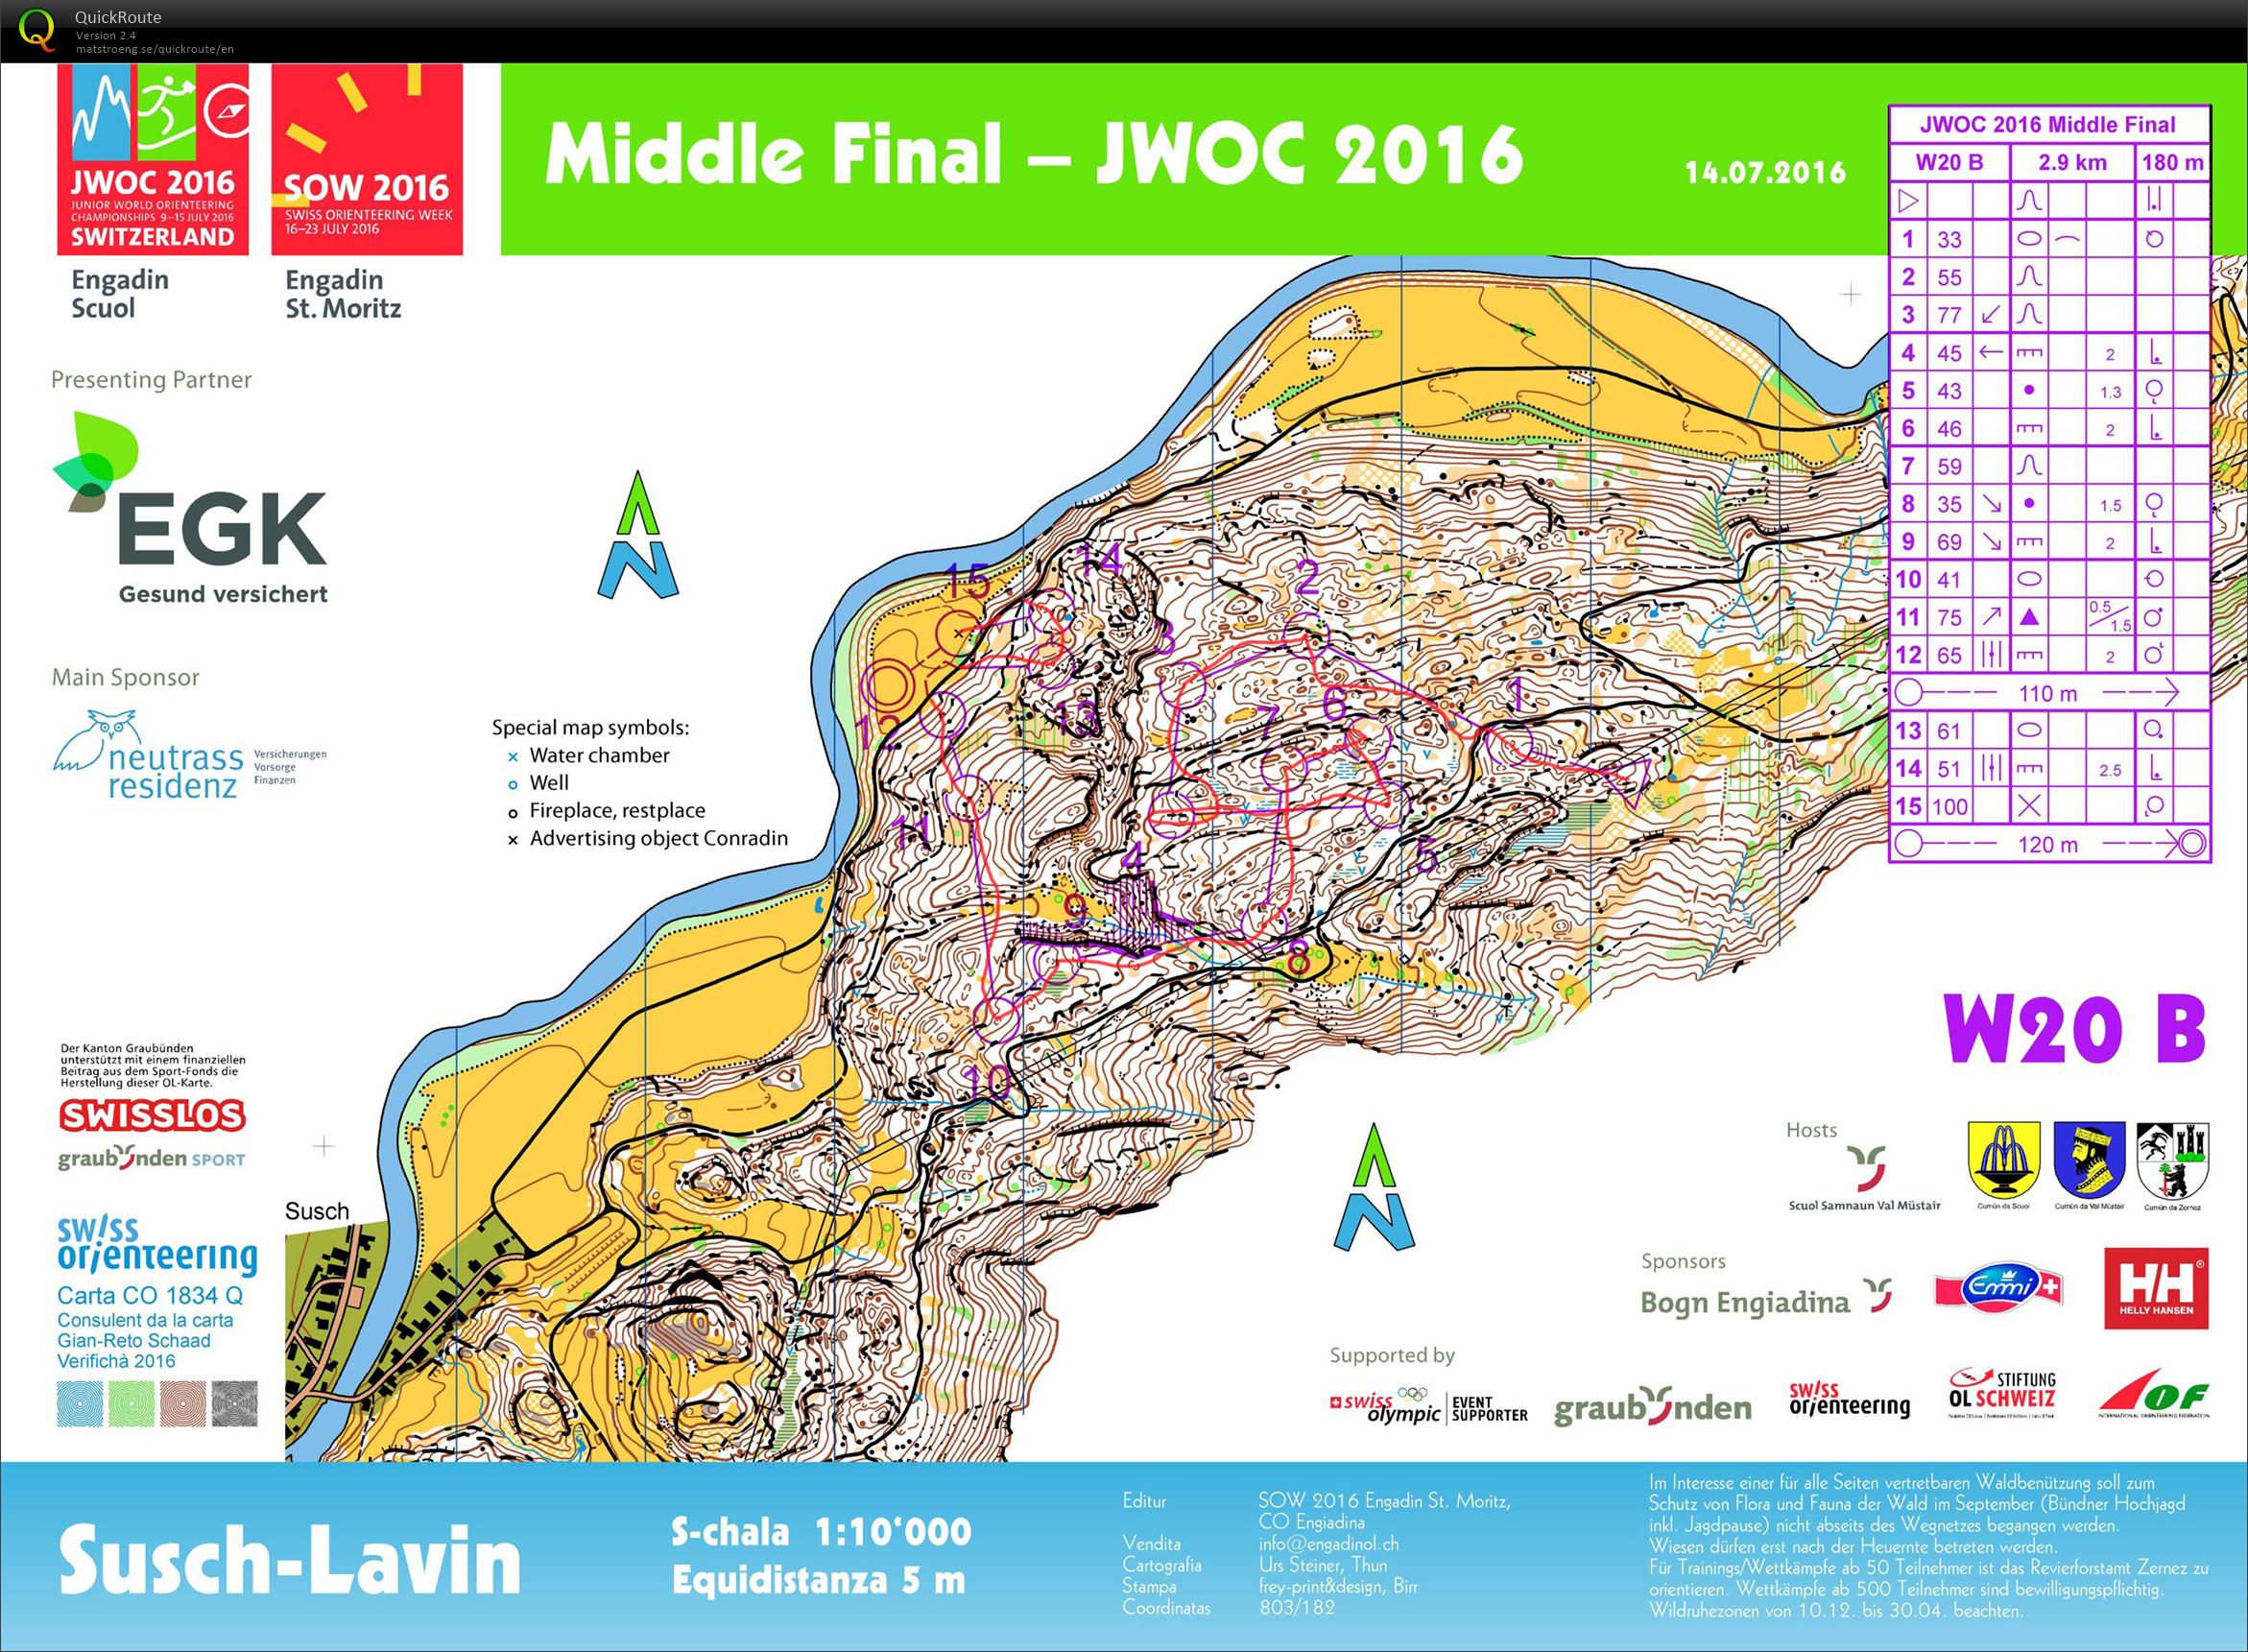 JWOC 2016 Middle B Final (14.07.2016)